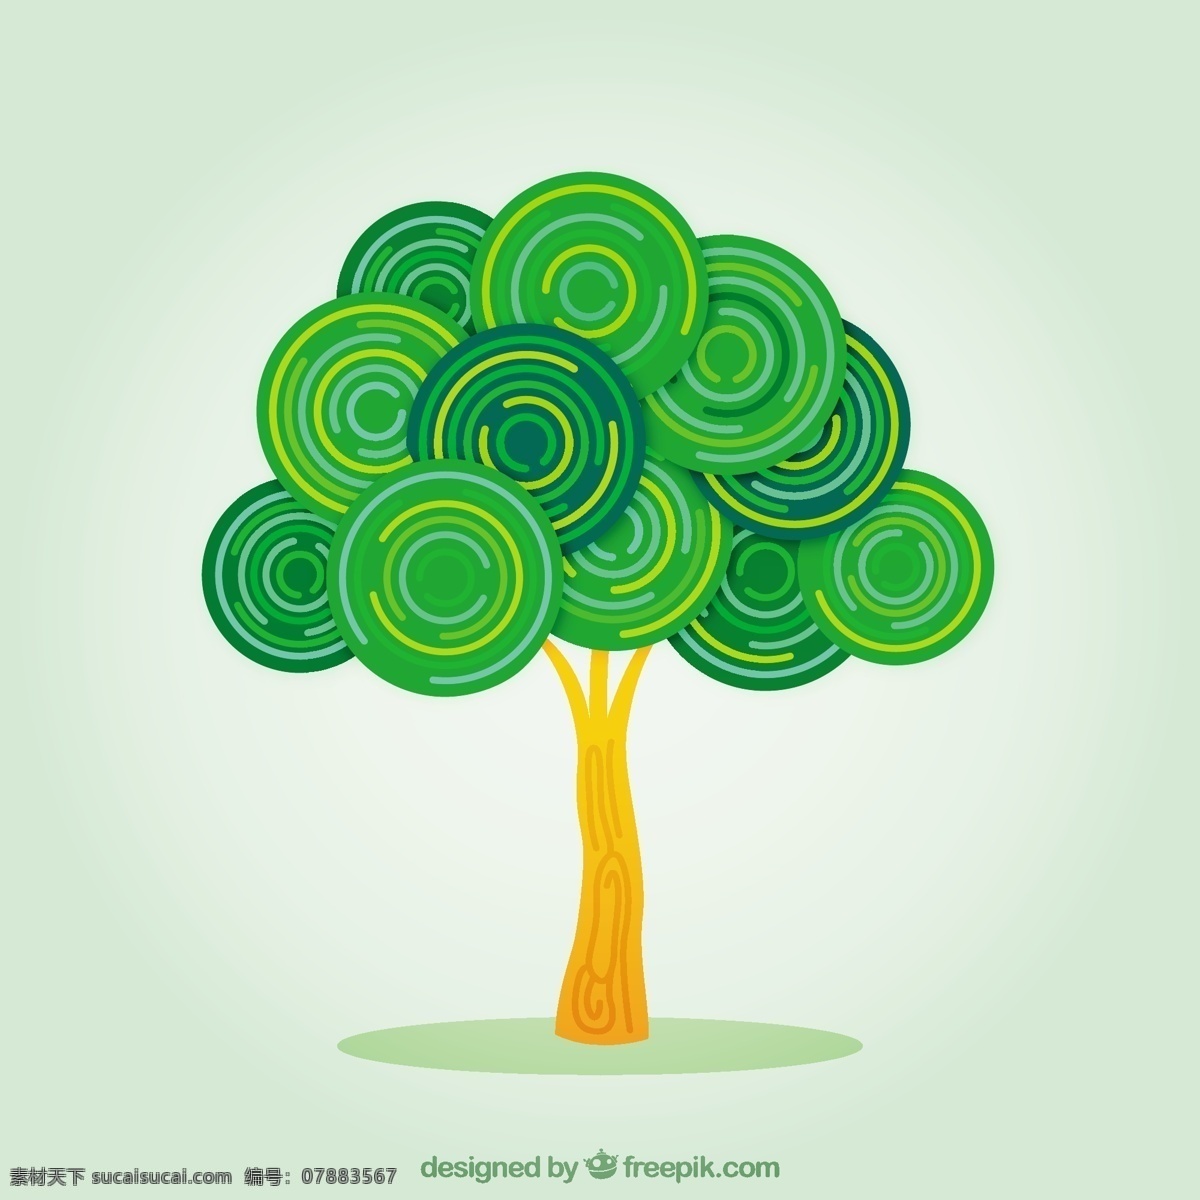 抽象的树 标识 树 抽象 圆 自然 绿色 春天 企业 抽象的标识 界 企业身份 身份 圆标识 树标识 自然标识 绿色标识 植被 白色